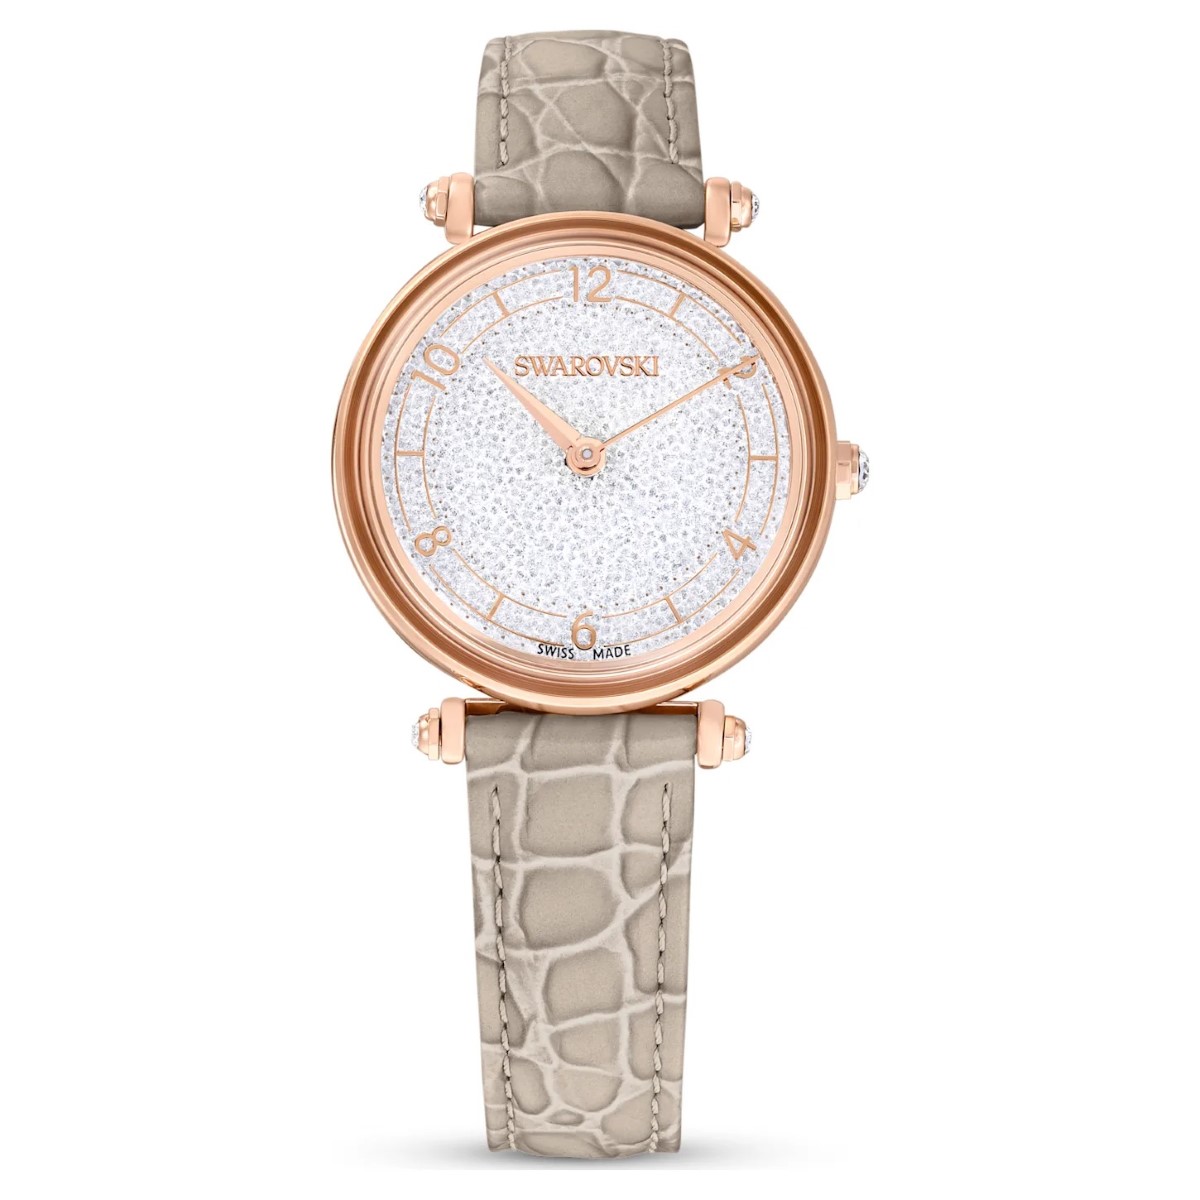 Photos - Wrist Watch Swarovski Crystalline Wonder Watch - Beige Rose Gold Tone with Leather Str 